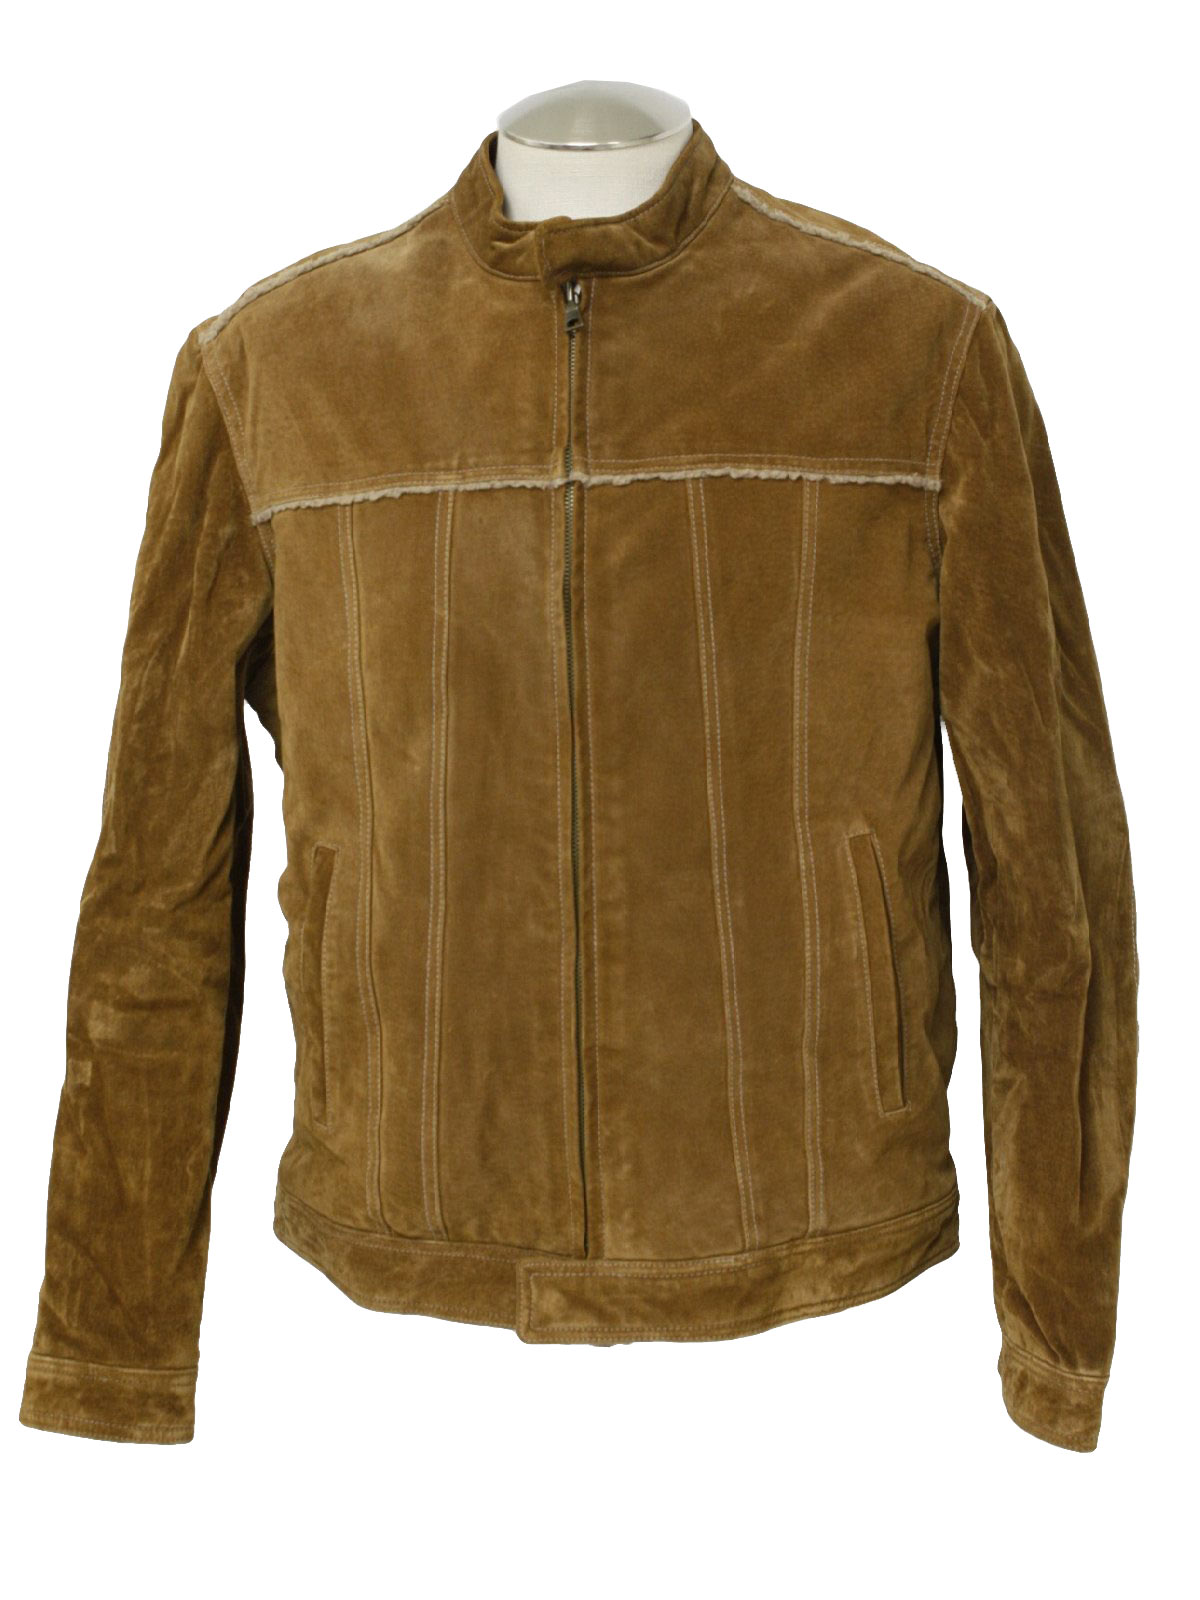 Wilsons Leathers Eighties Vintage Leather Jacket: 80s -Wilsons Leathers ...